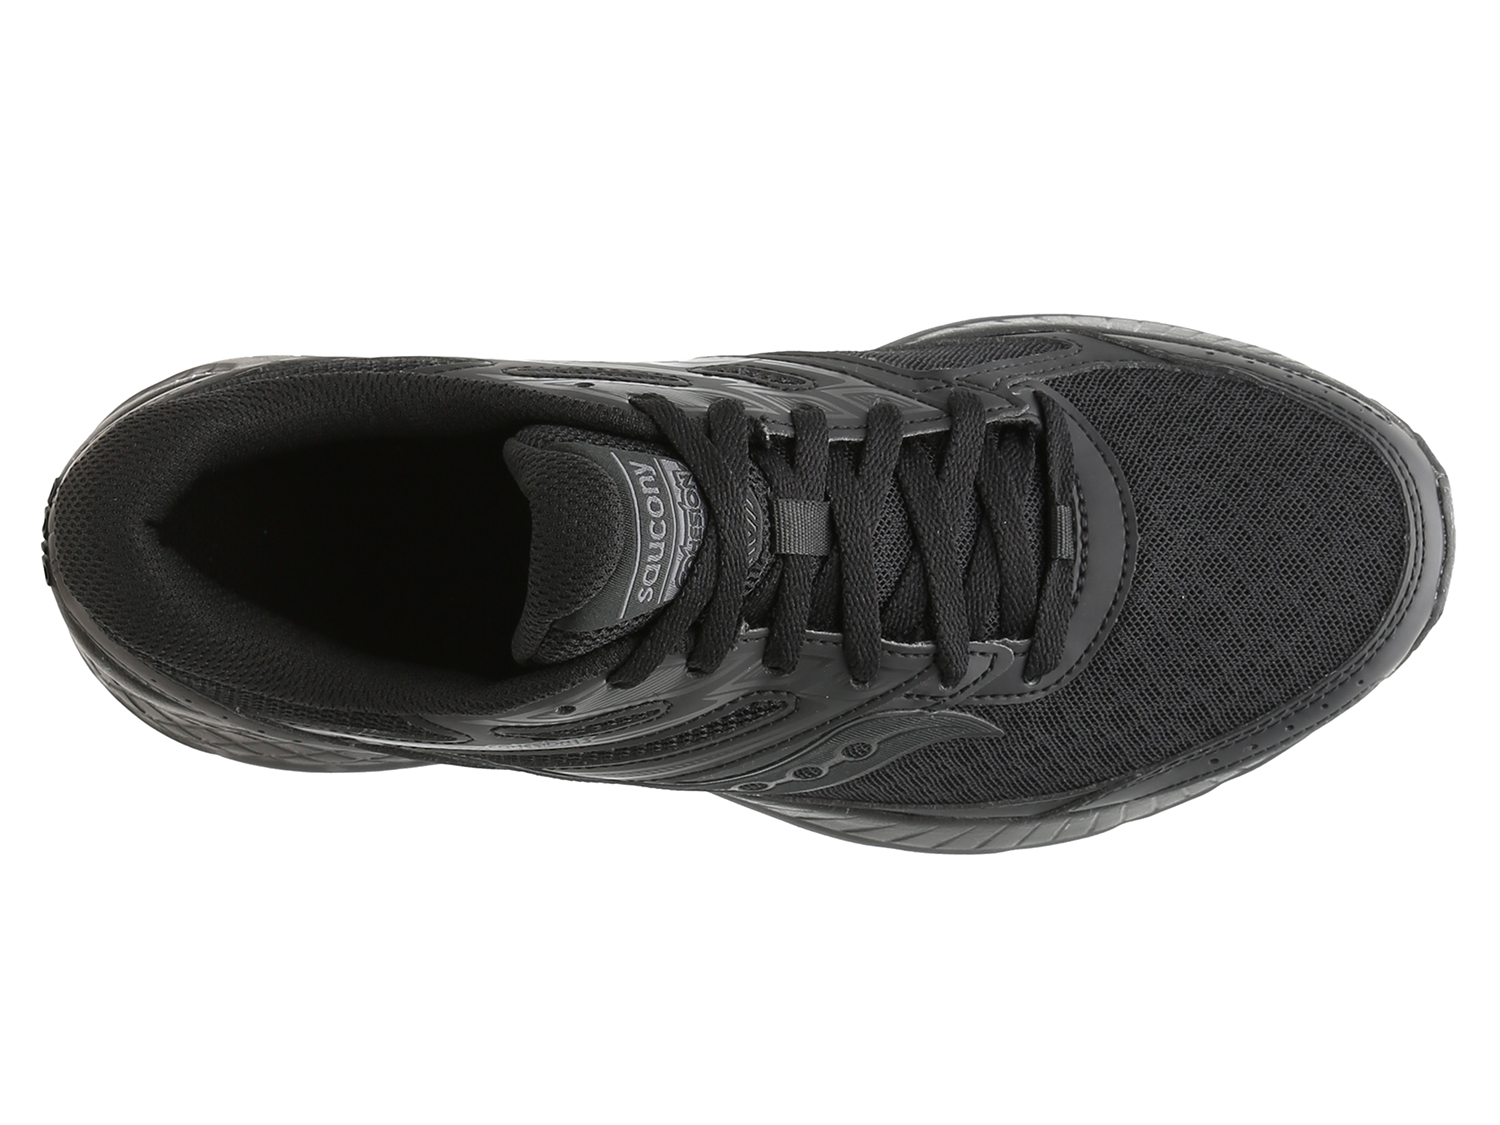 Black/Grey/Light Blue Saucony Women's Cohesion TR13 Walking Shoe